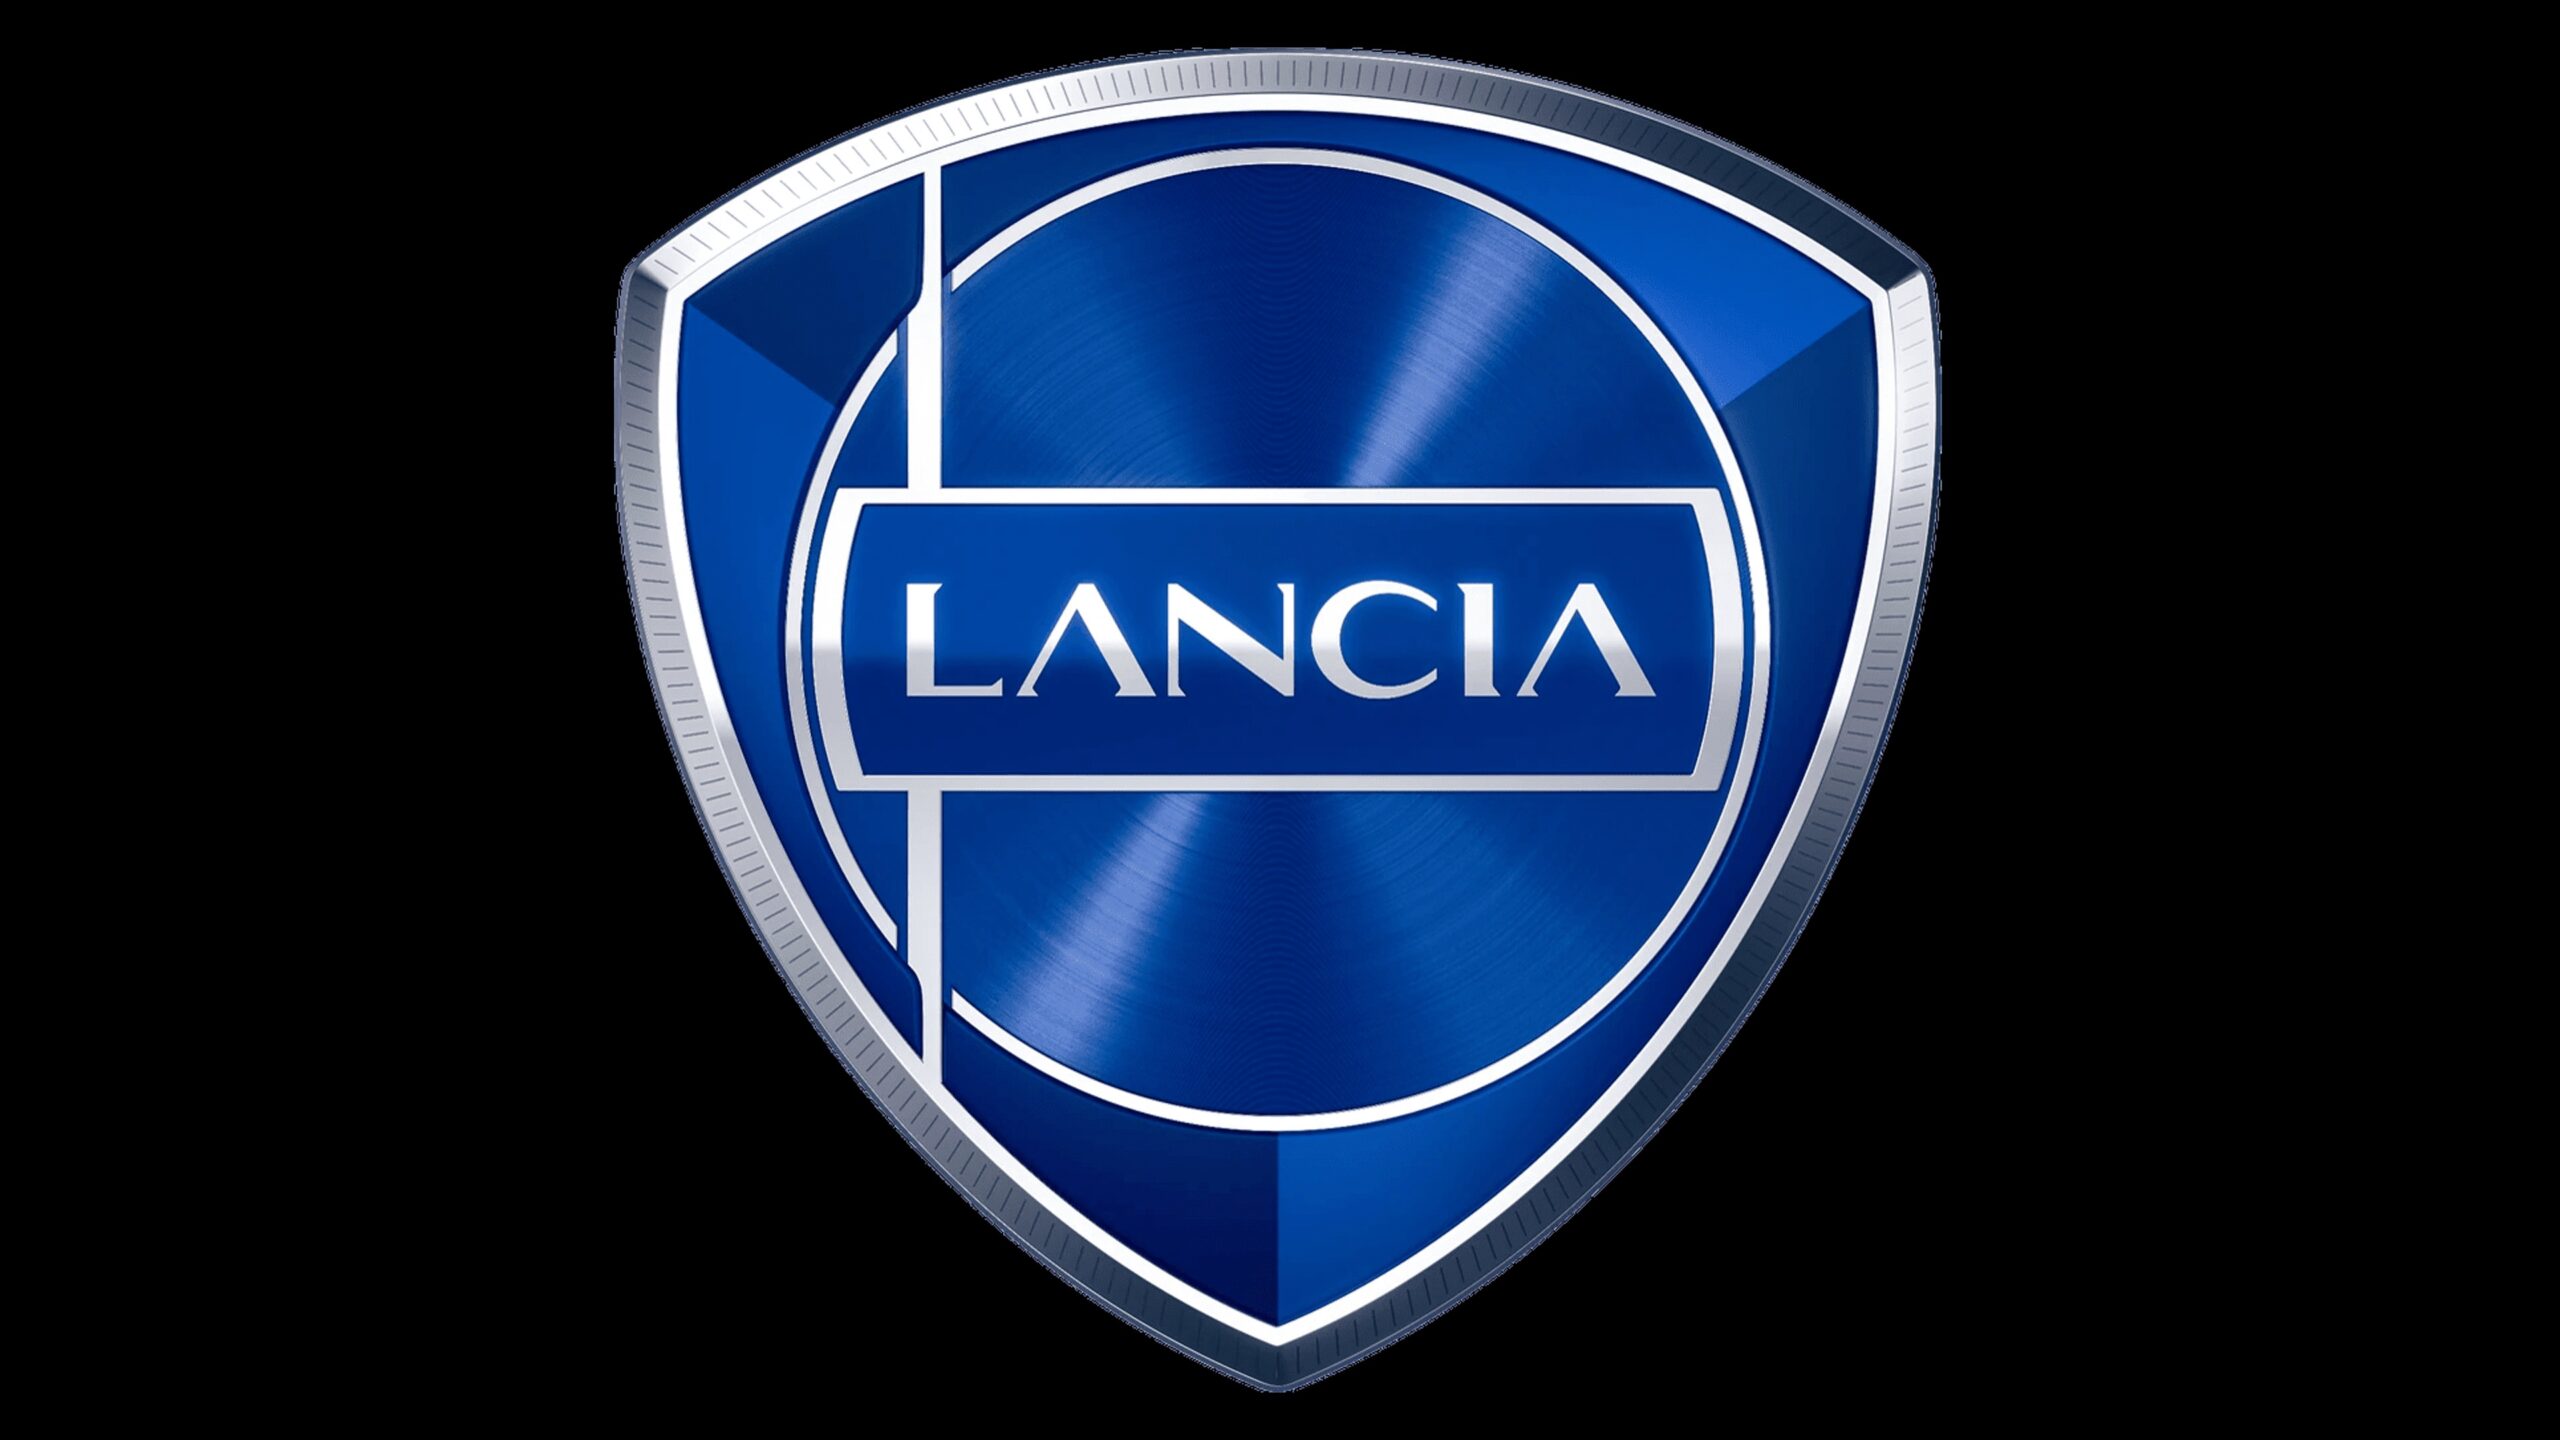 Hãng Lancia (Ảnh: Internet)